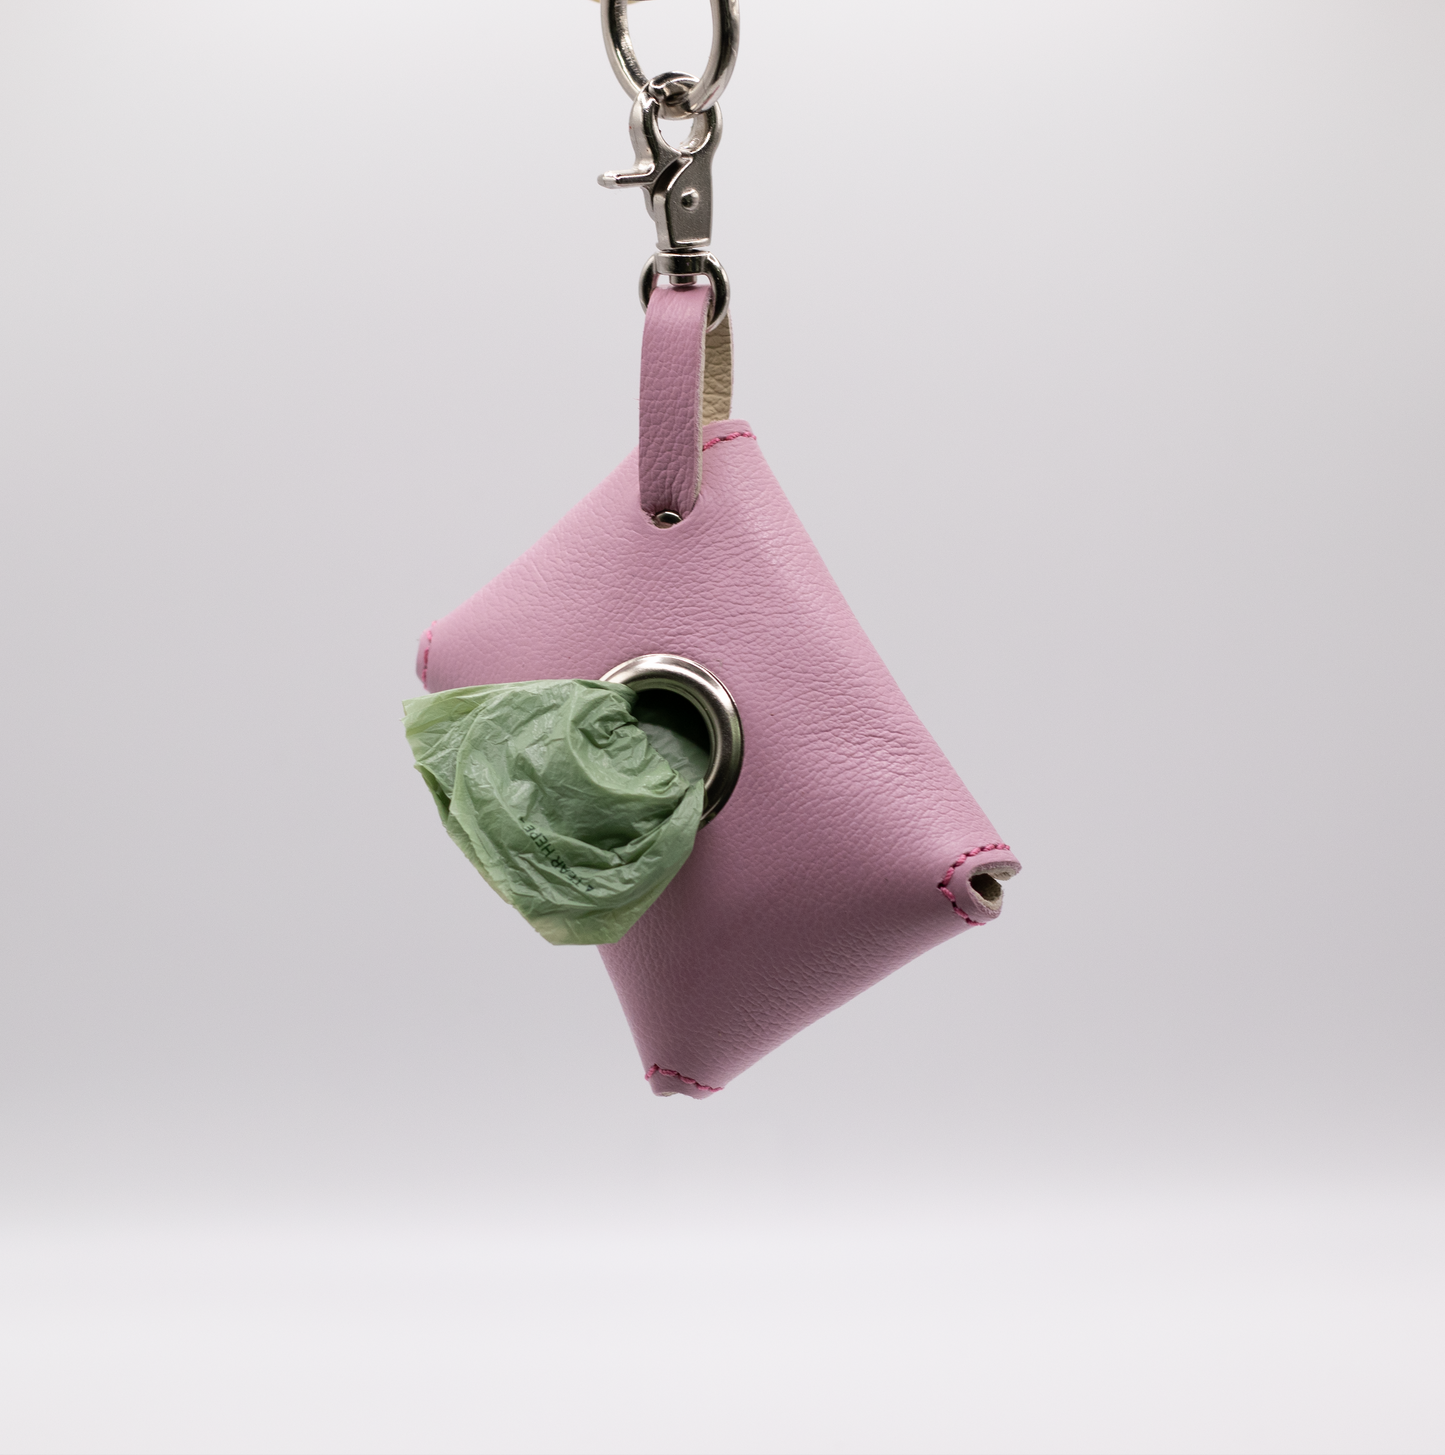 D&H PooSh - Soft Leather Poo Bag Dispenser Pink